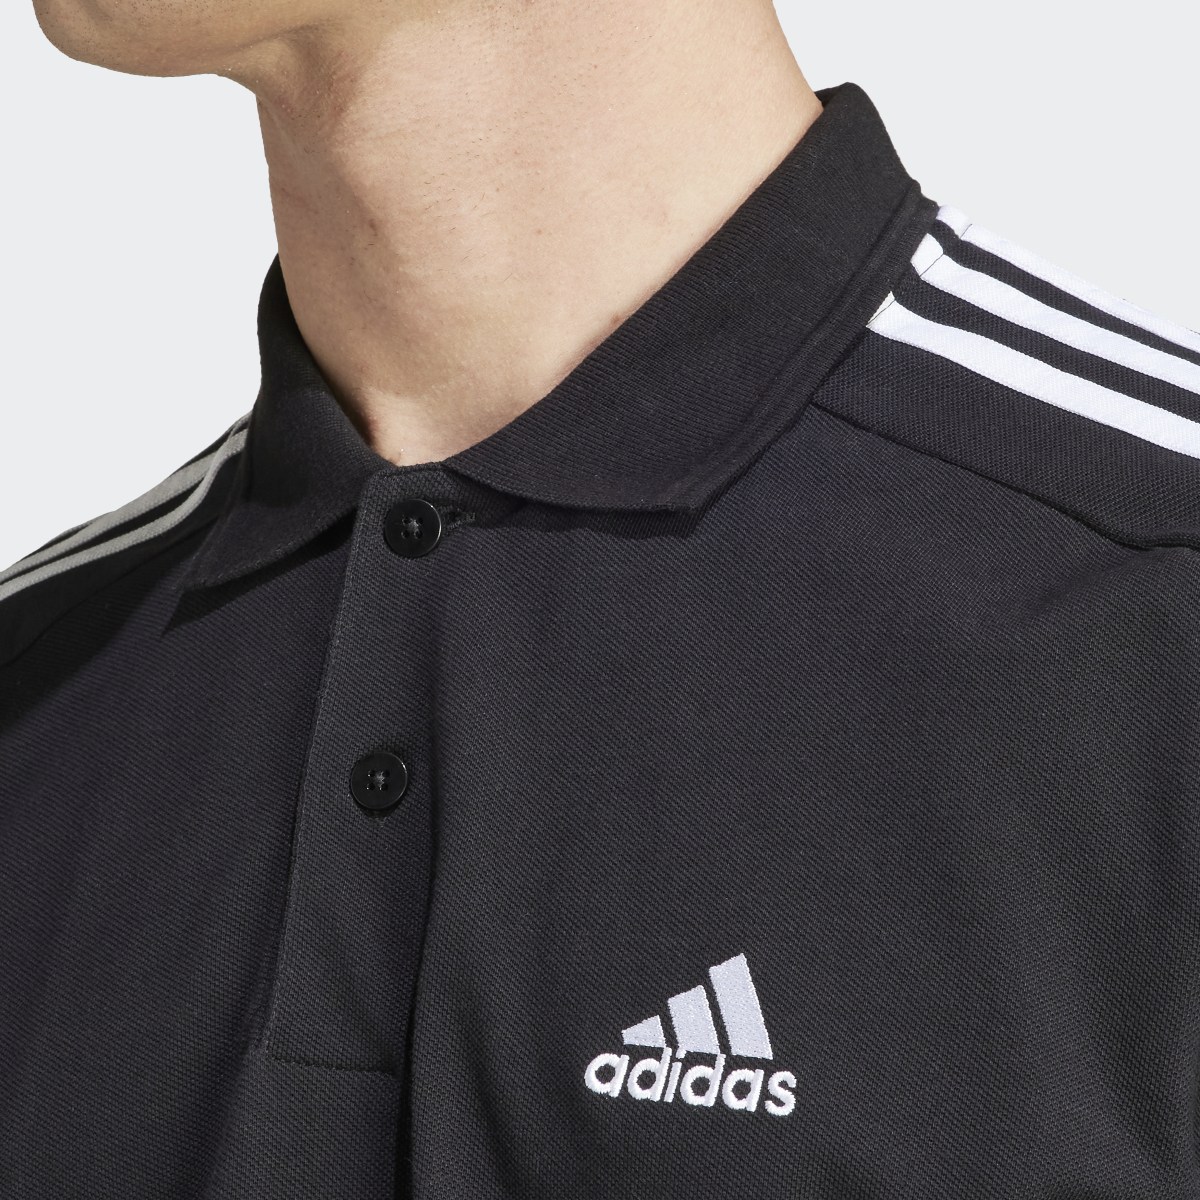 Adidas Essentials Piqué Embroidered Small Logo 3-Stripes Polo Shirt. 7